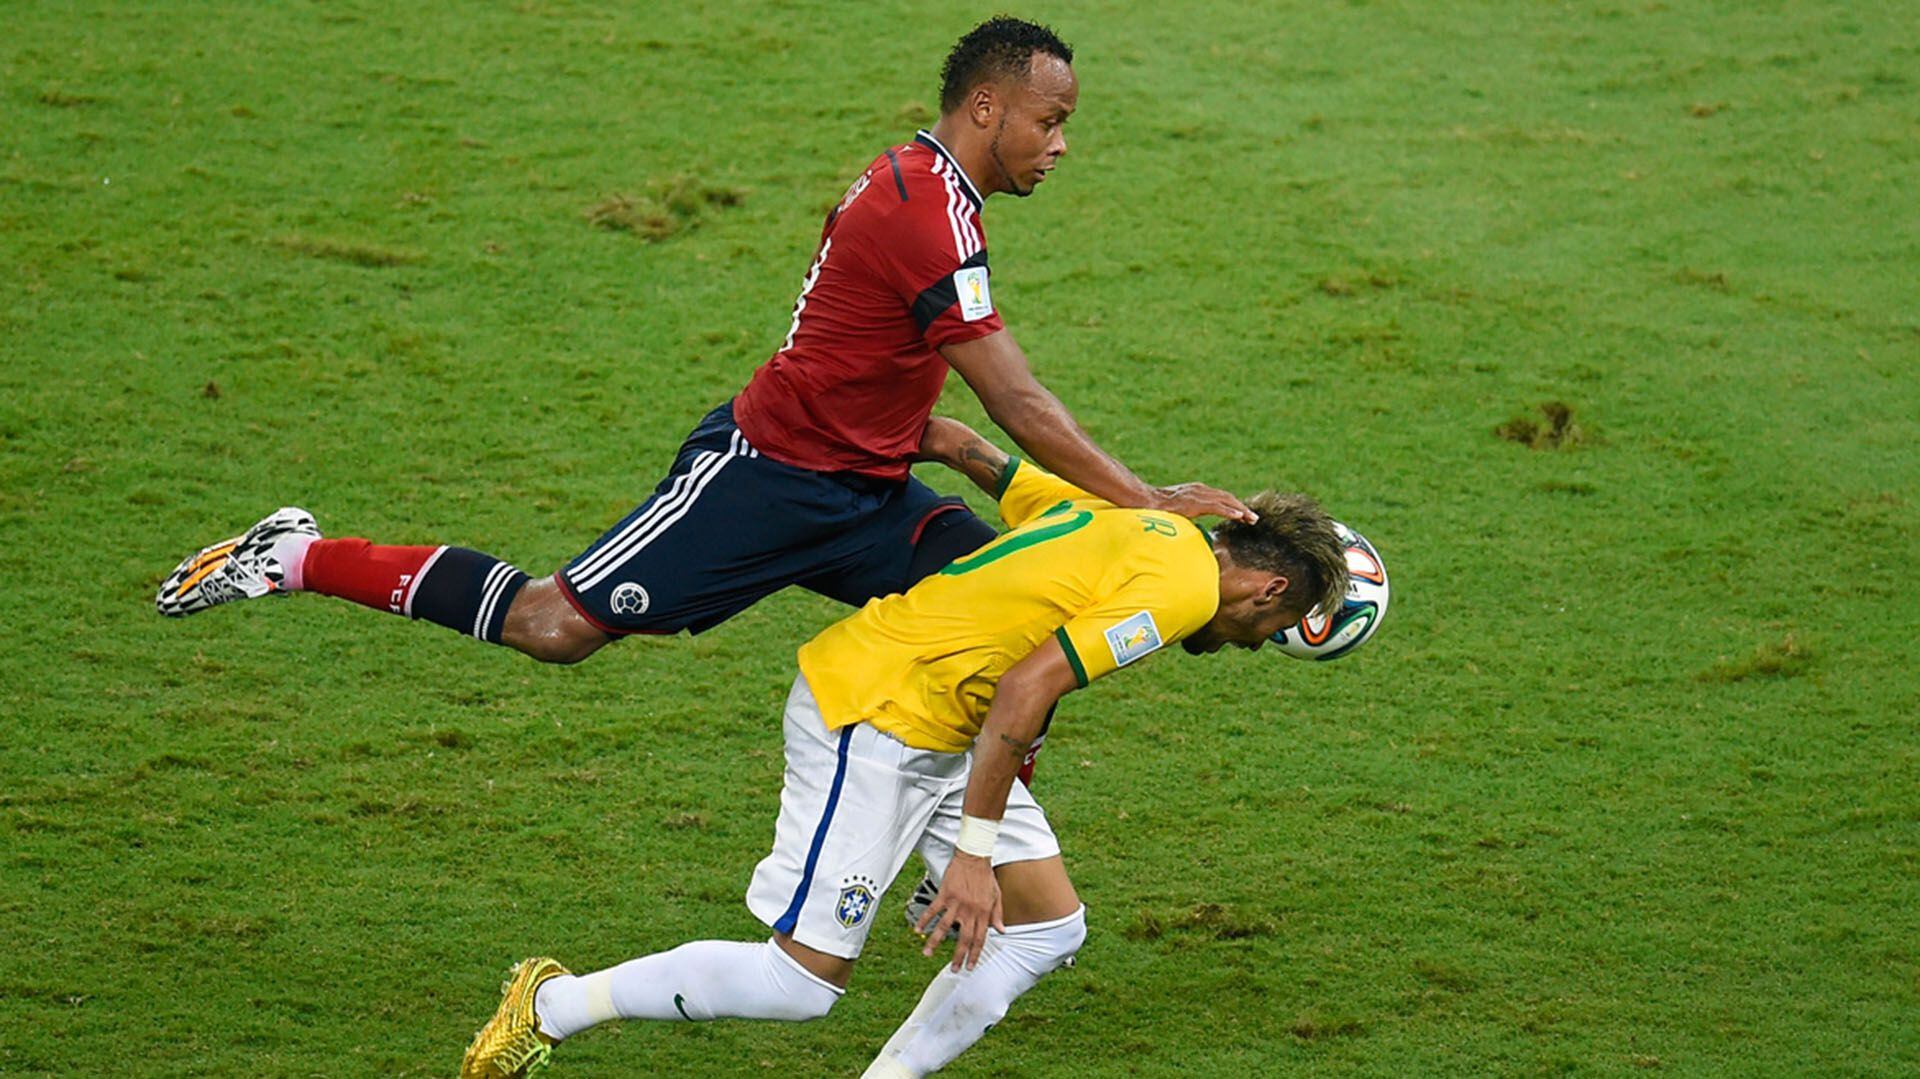 El momento en que Zúñiga golpeó a Neymar 